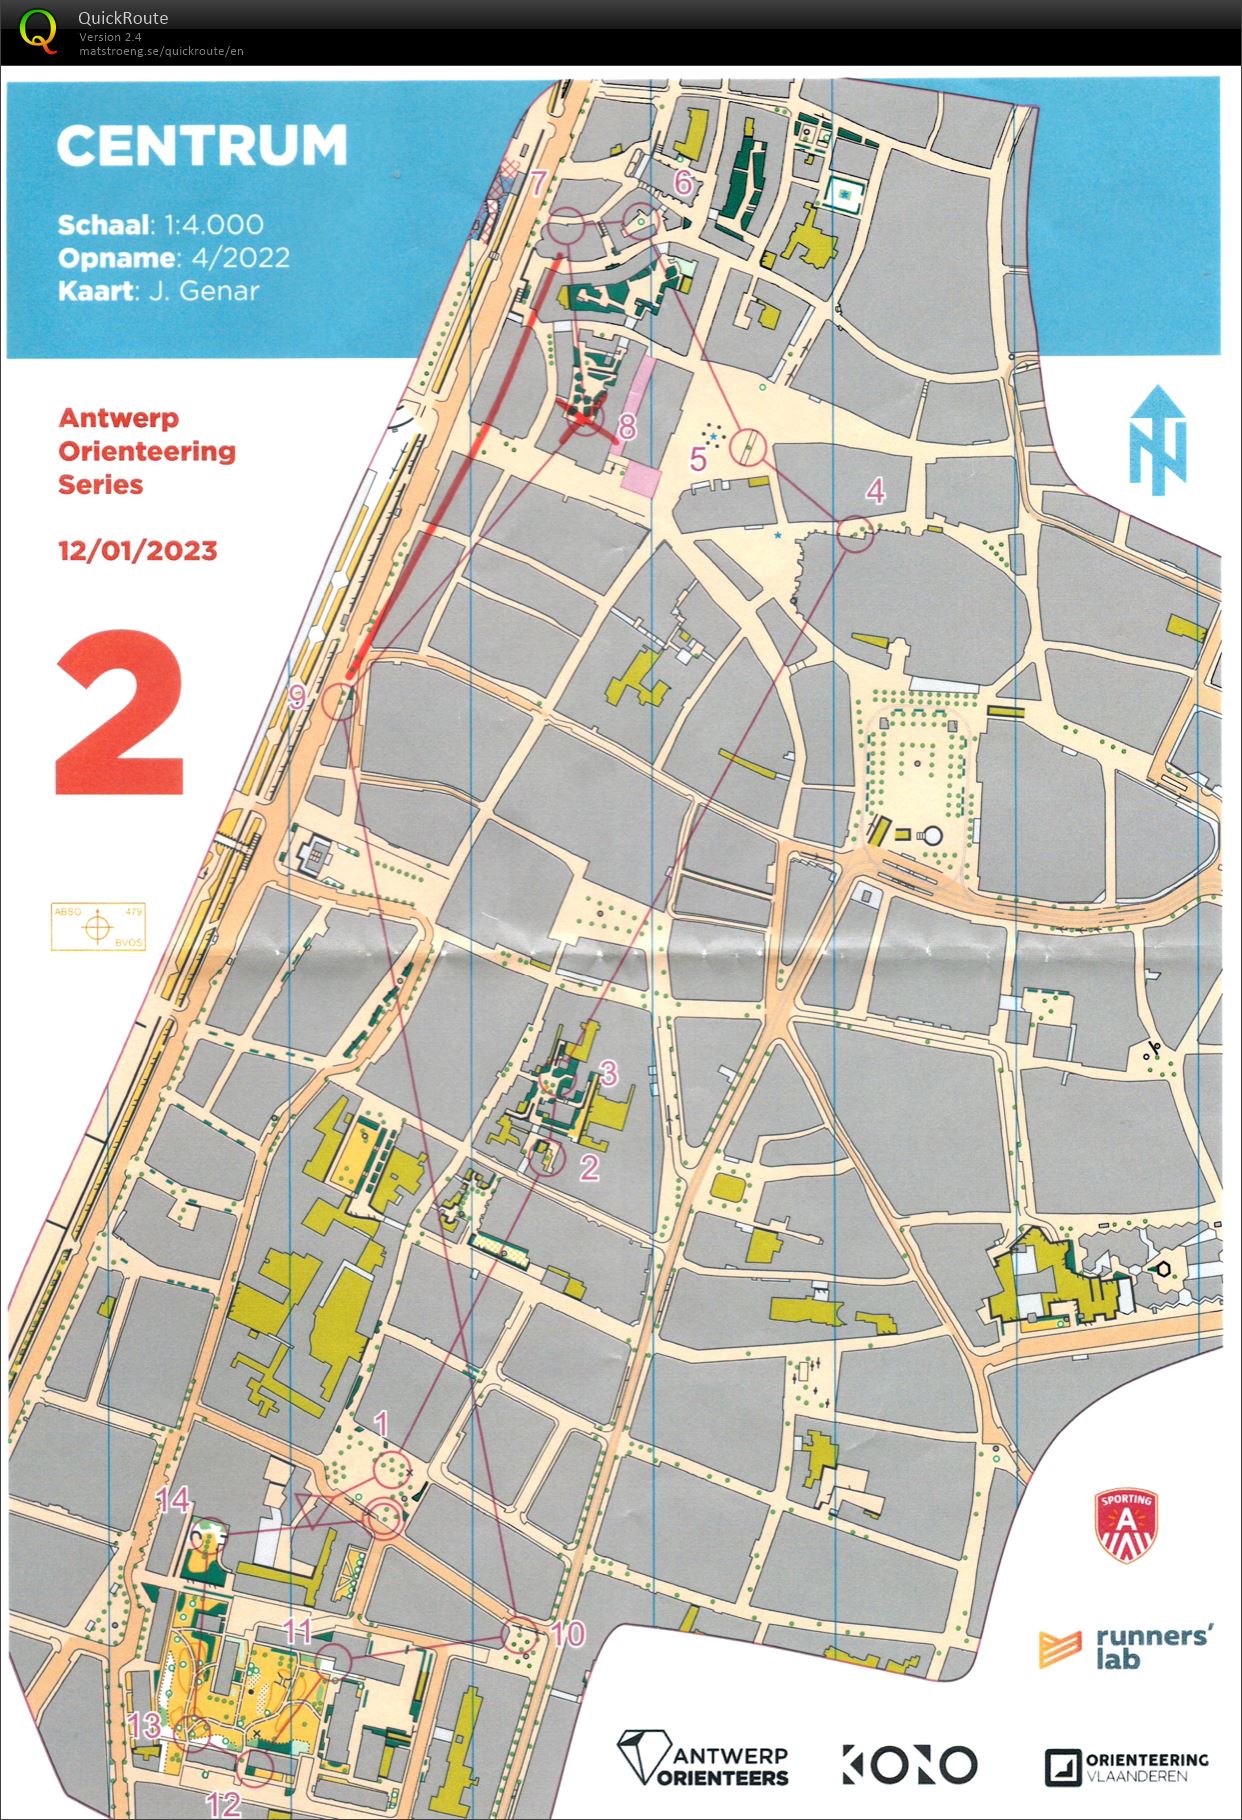 Antwerp Orienteering Series - Centrum - Kort (2023-01-12)